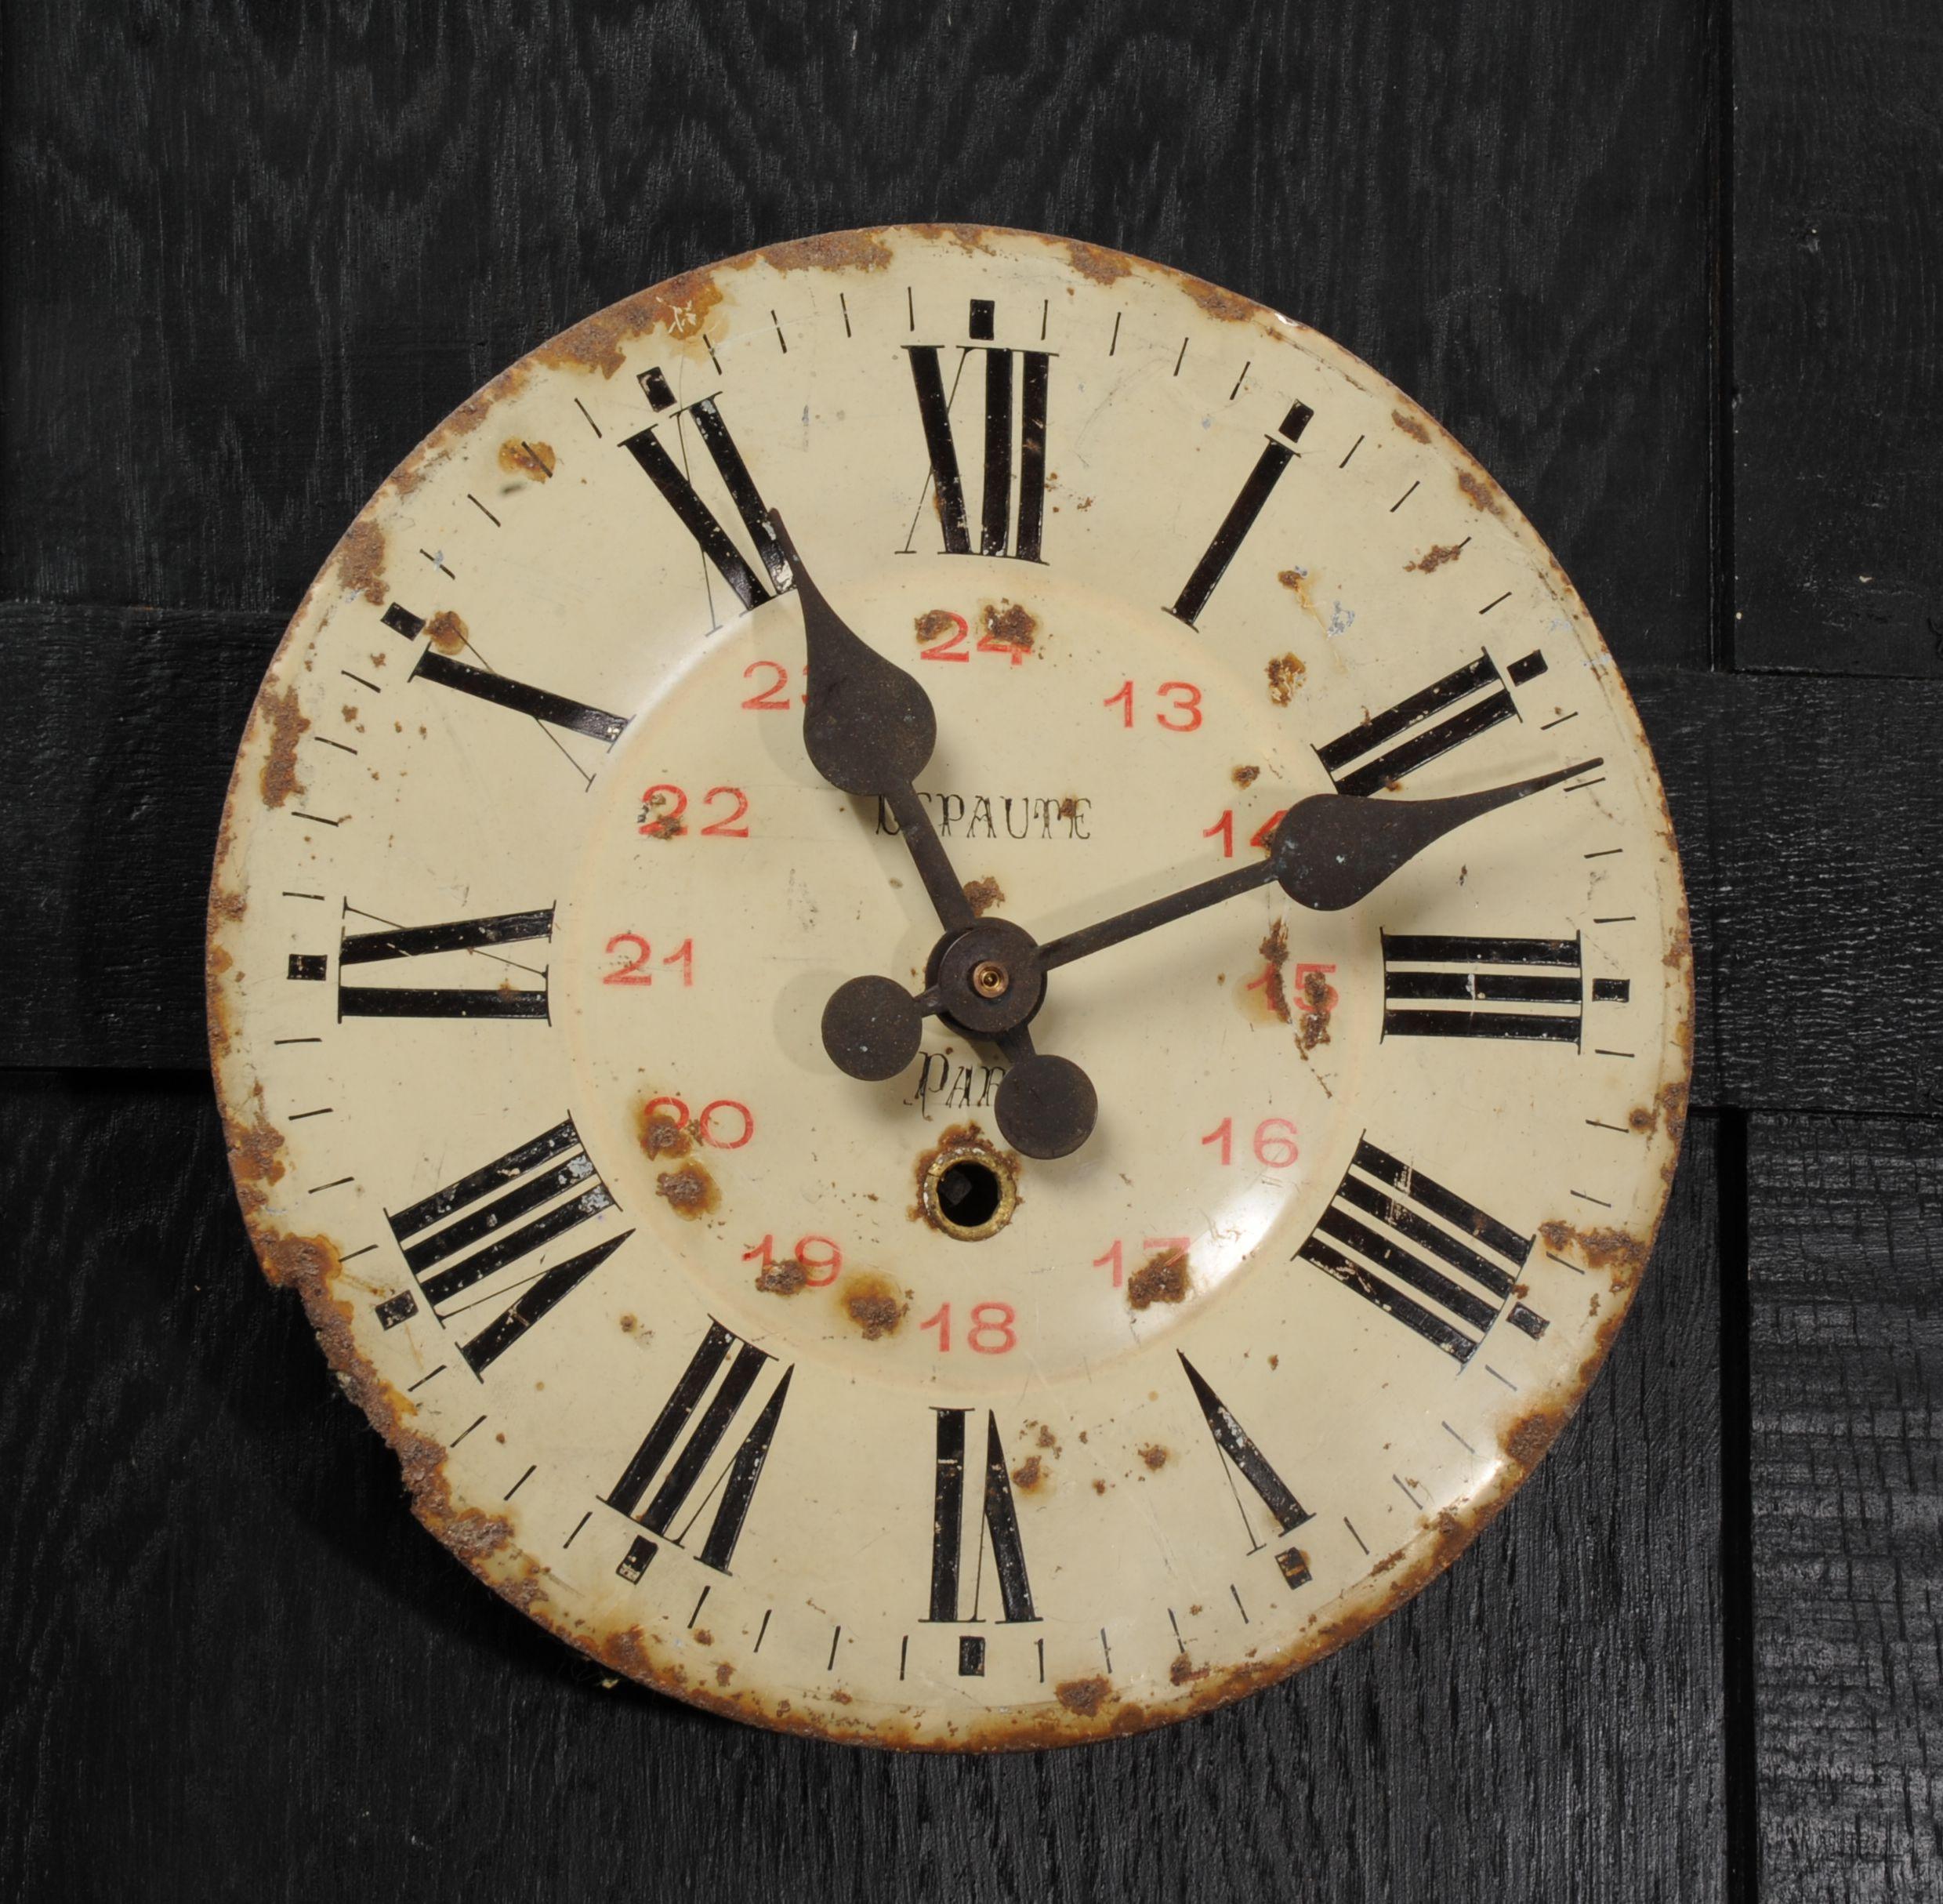 20th Century Antique French Clock Dial Face - Lepaute Paris - Industrial/Railway